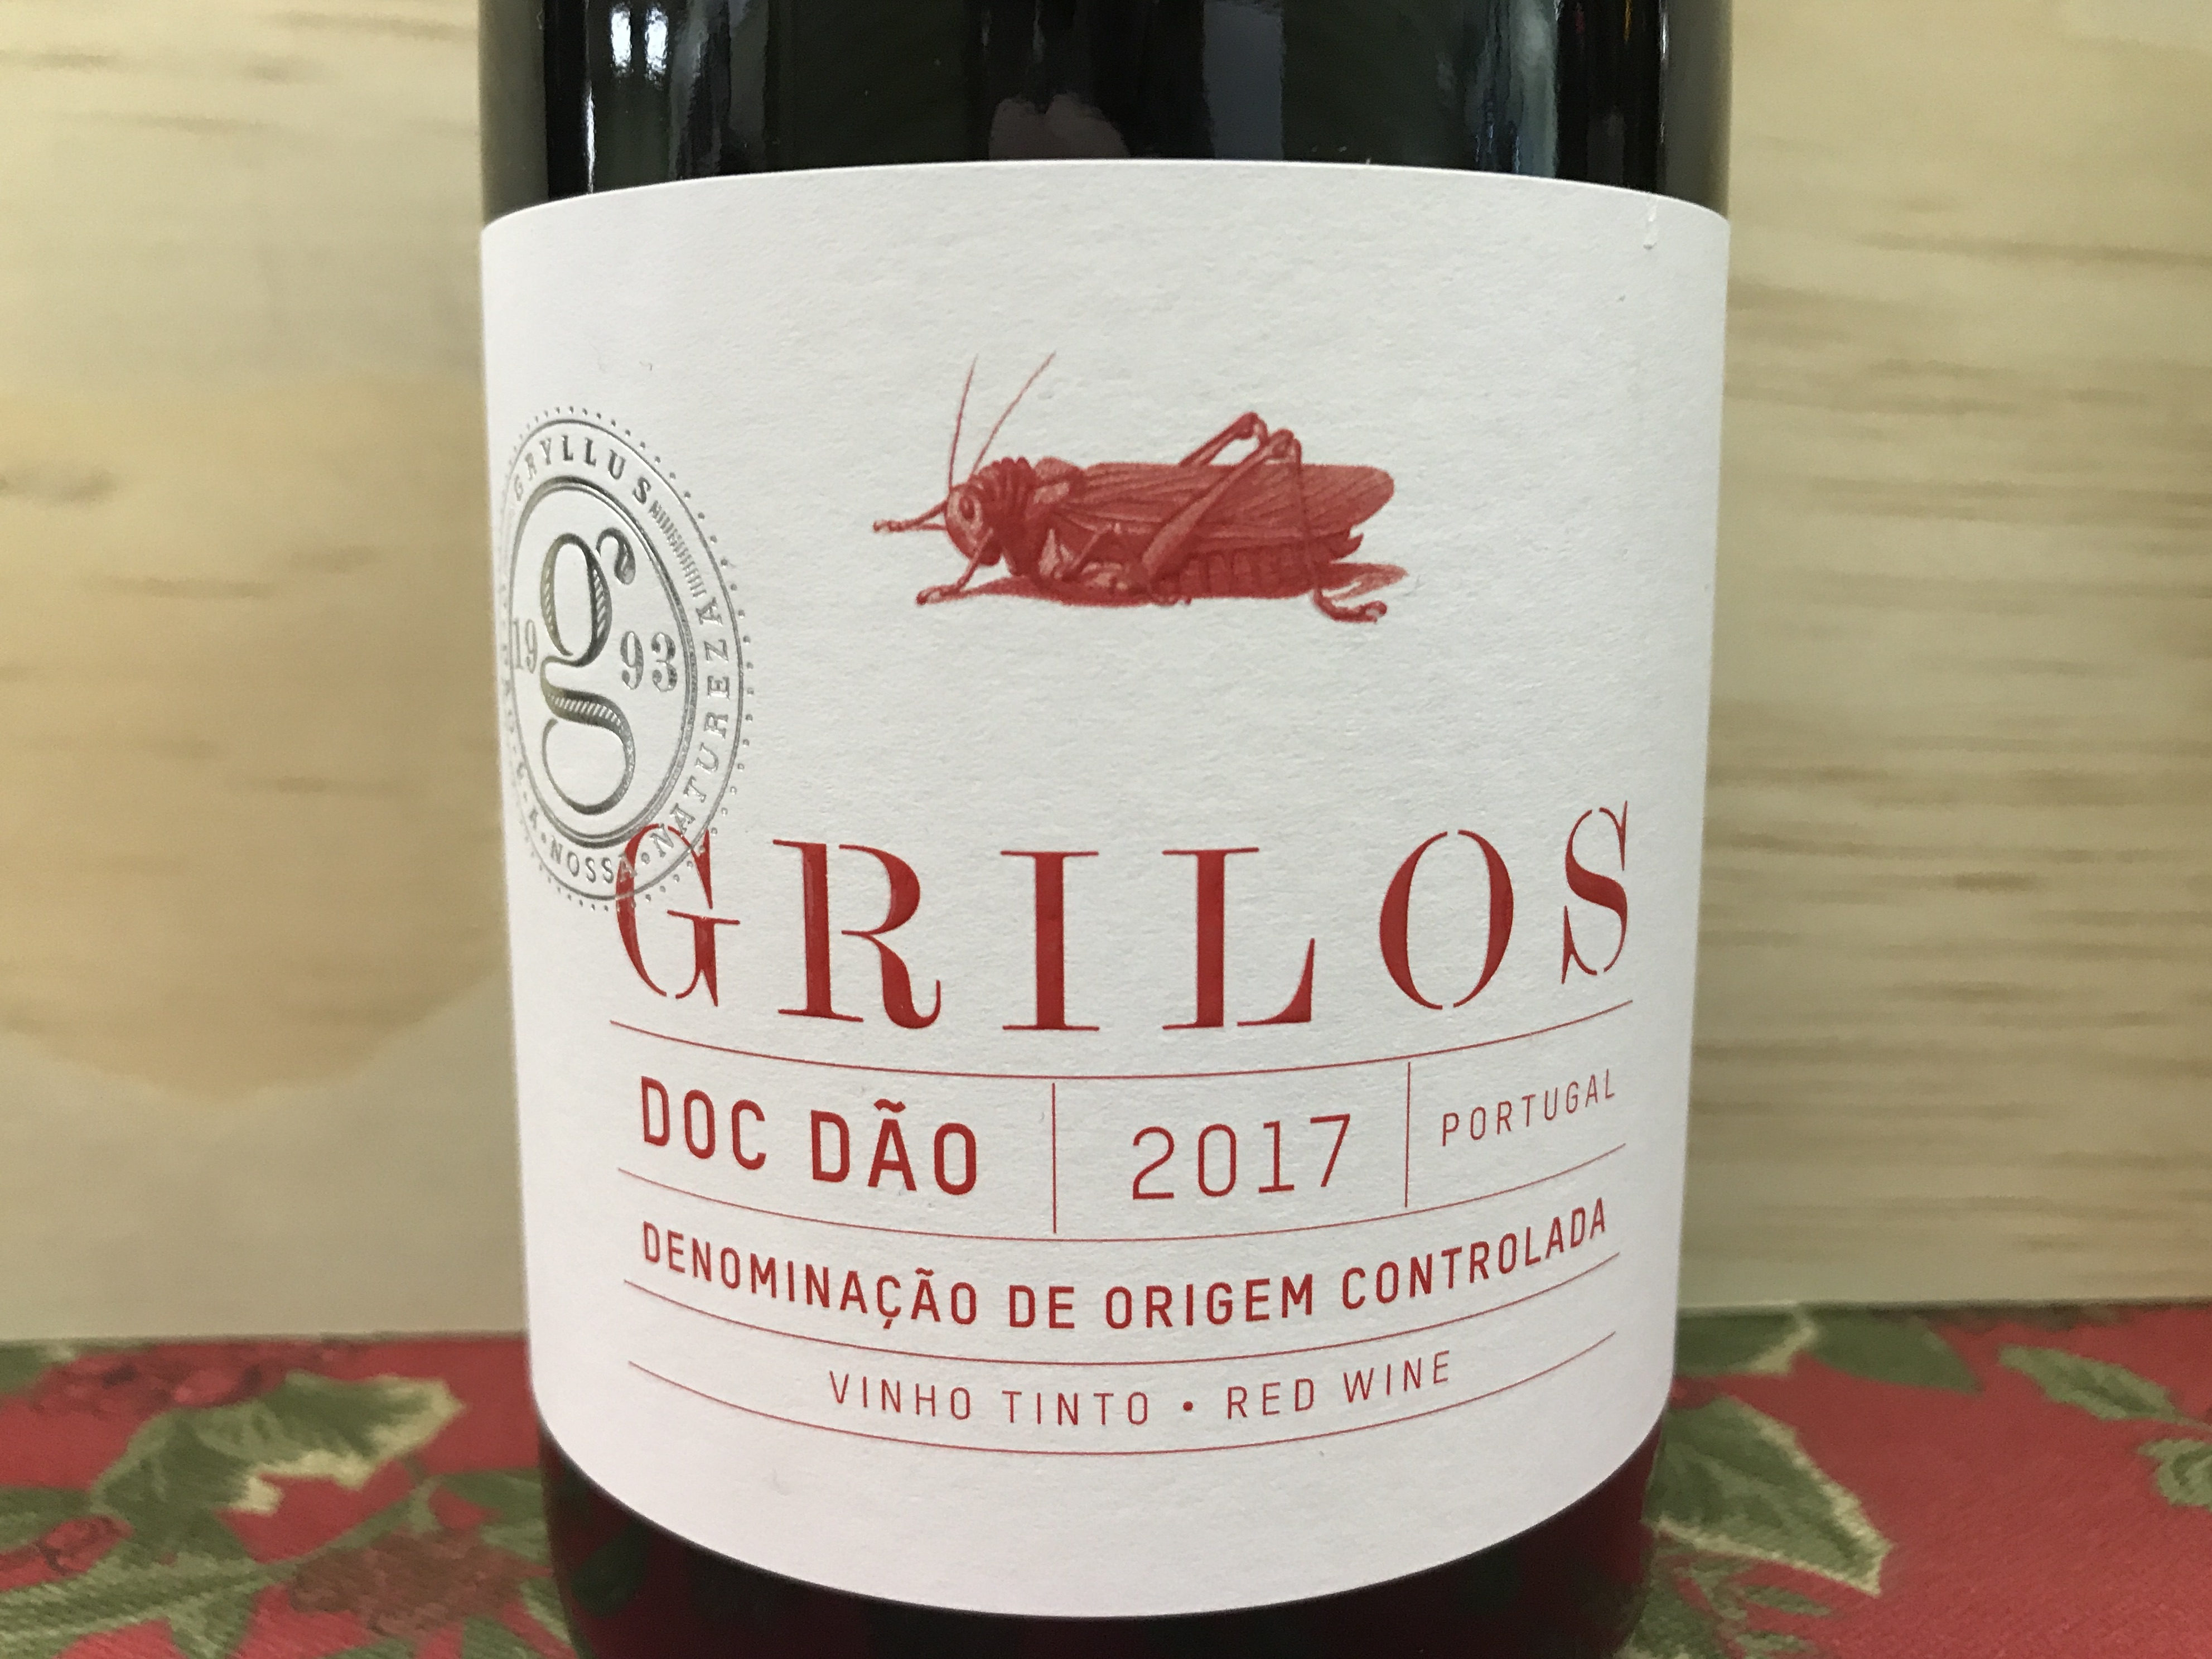 Grilos Dao Vinho Tinto red 2017